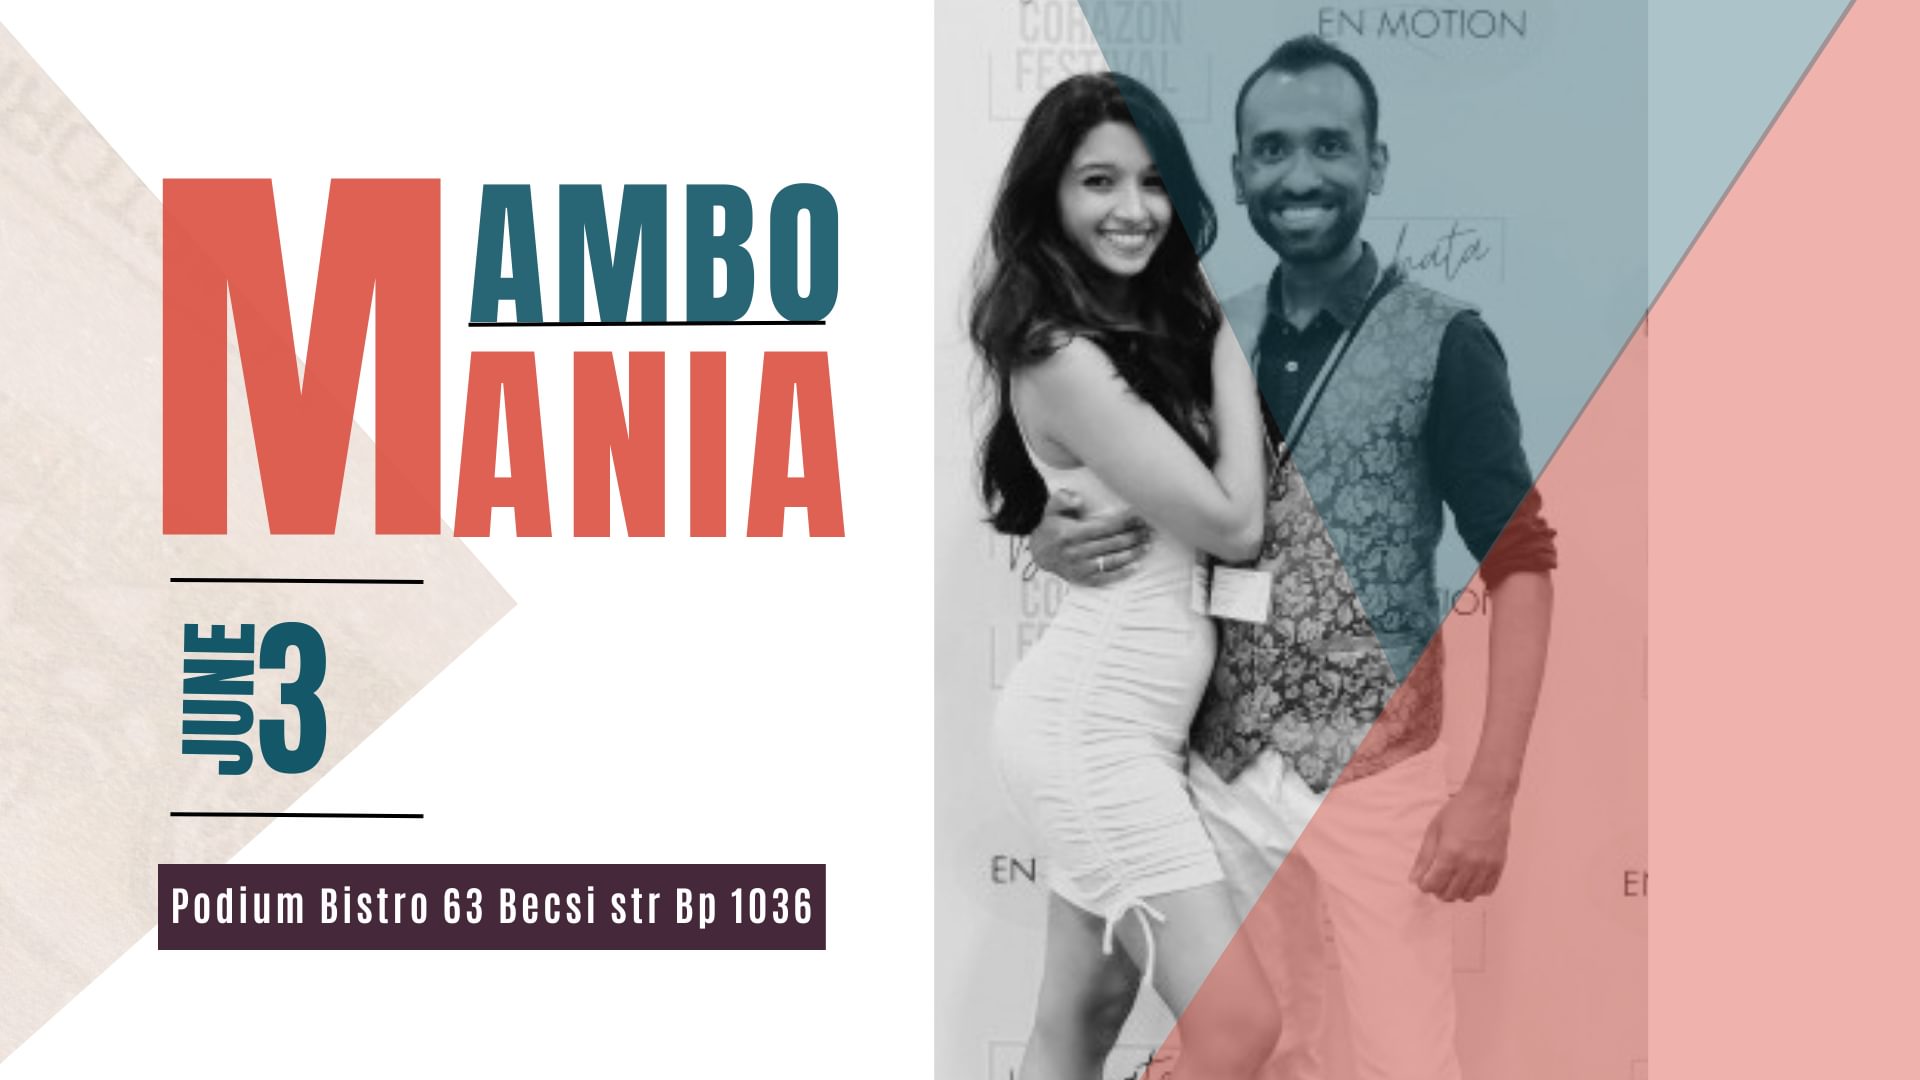 Mambo Mania – Salsa Party